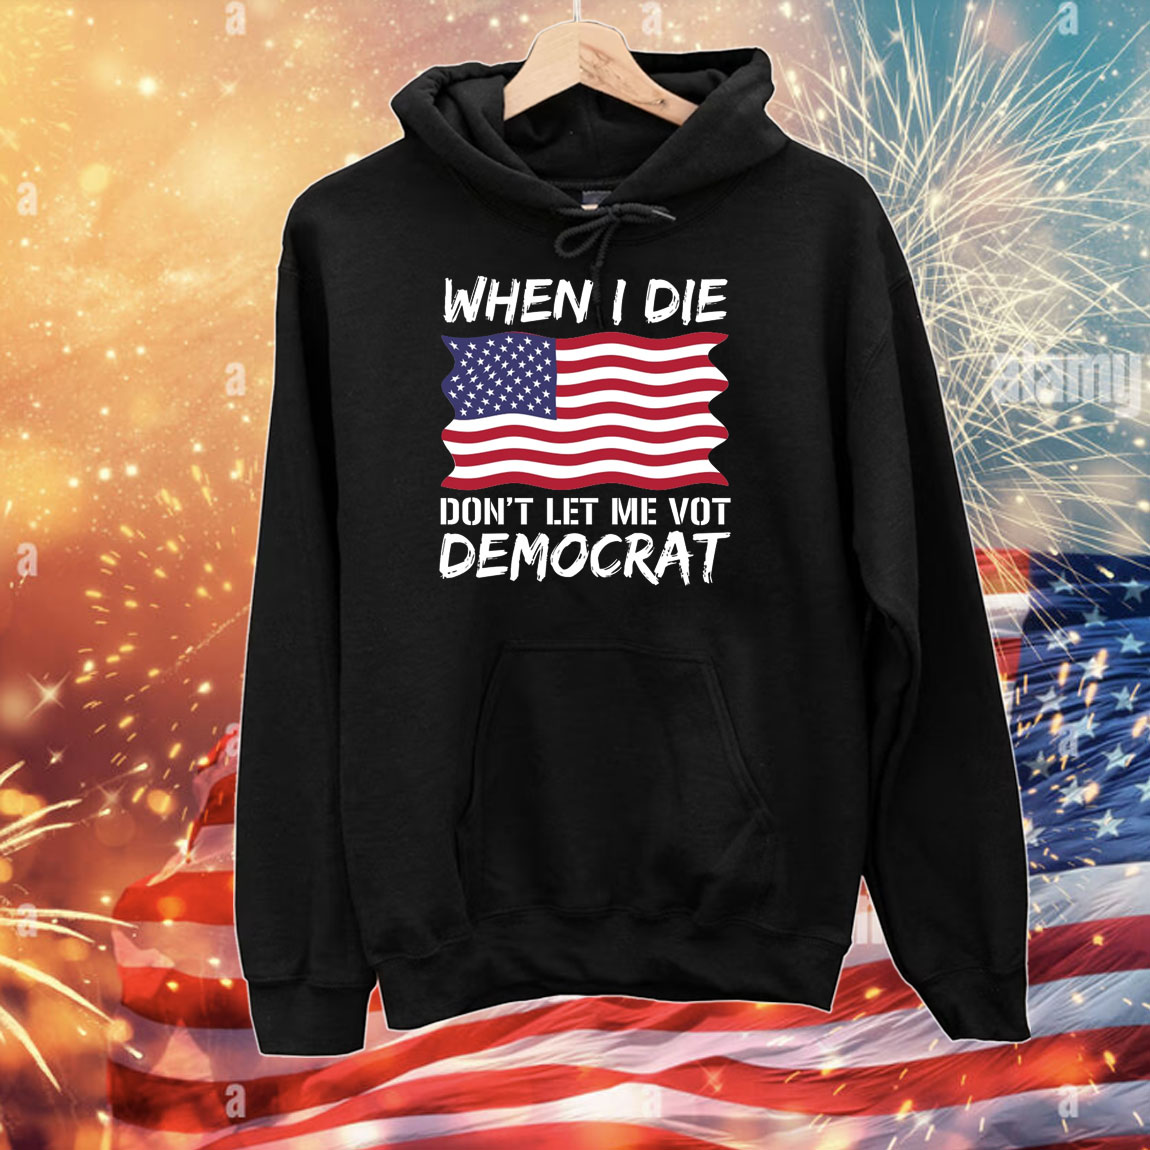 When I Die Don't Let Me Vote Democrat, Anti Biden Shirts